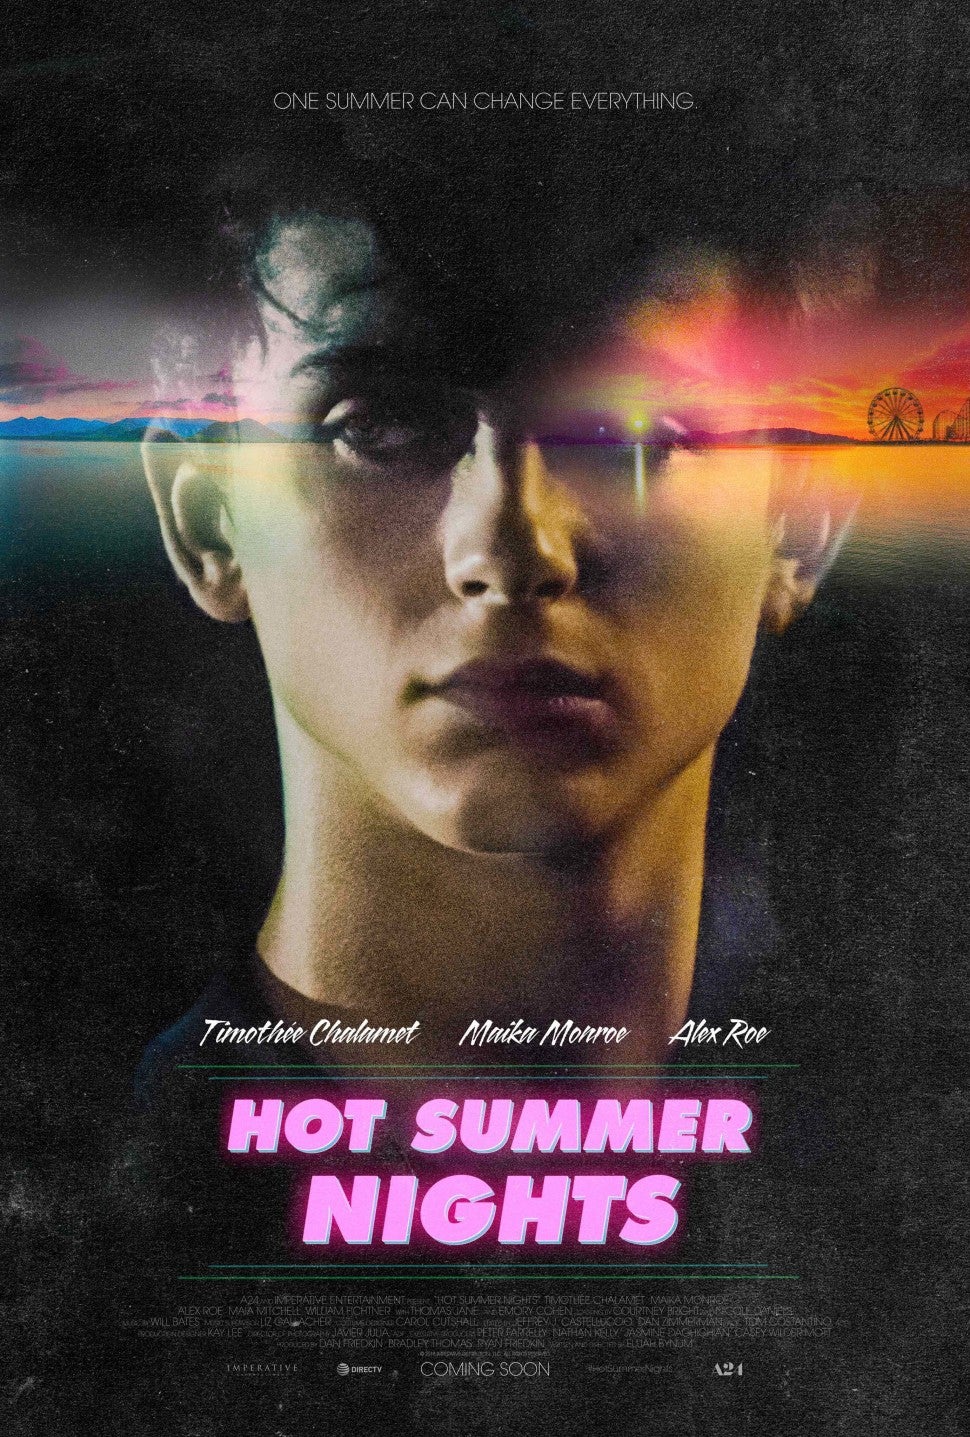 Timothee Chalamet, Hot Summer Nights